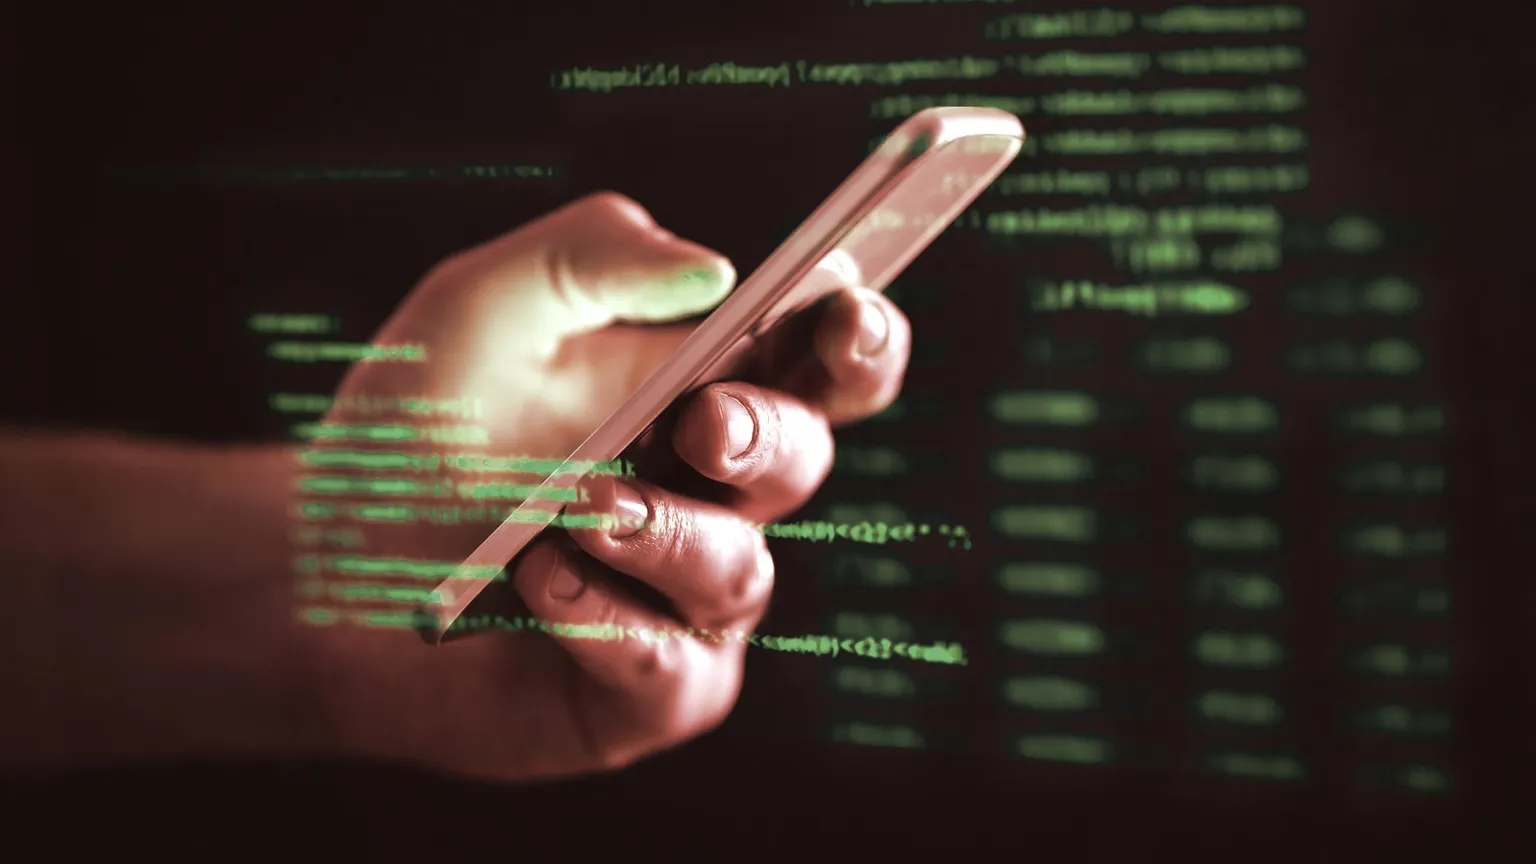 Los hackers apuntan a los propietarios de criptomonedas. Imagen: Shutterstock